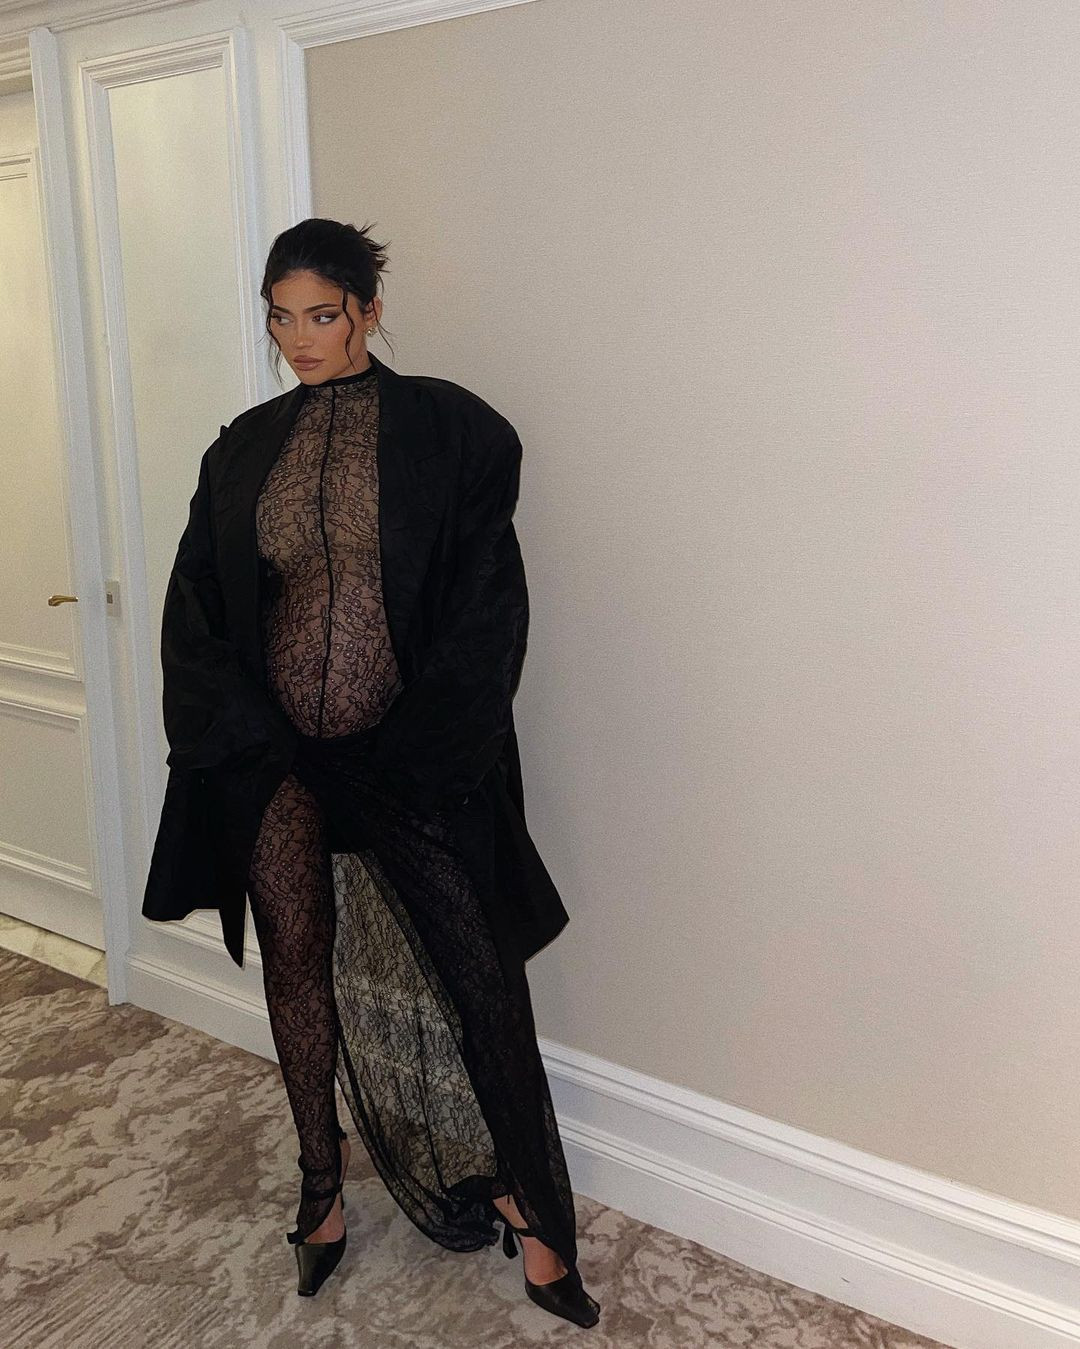 Sở hữu gần 1 tỷ đô, Kylie Jenner không chỉ giàu mà còn gây sốc bởi gu mặc táo bạo - 4